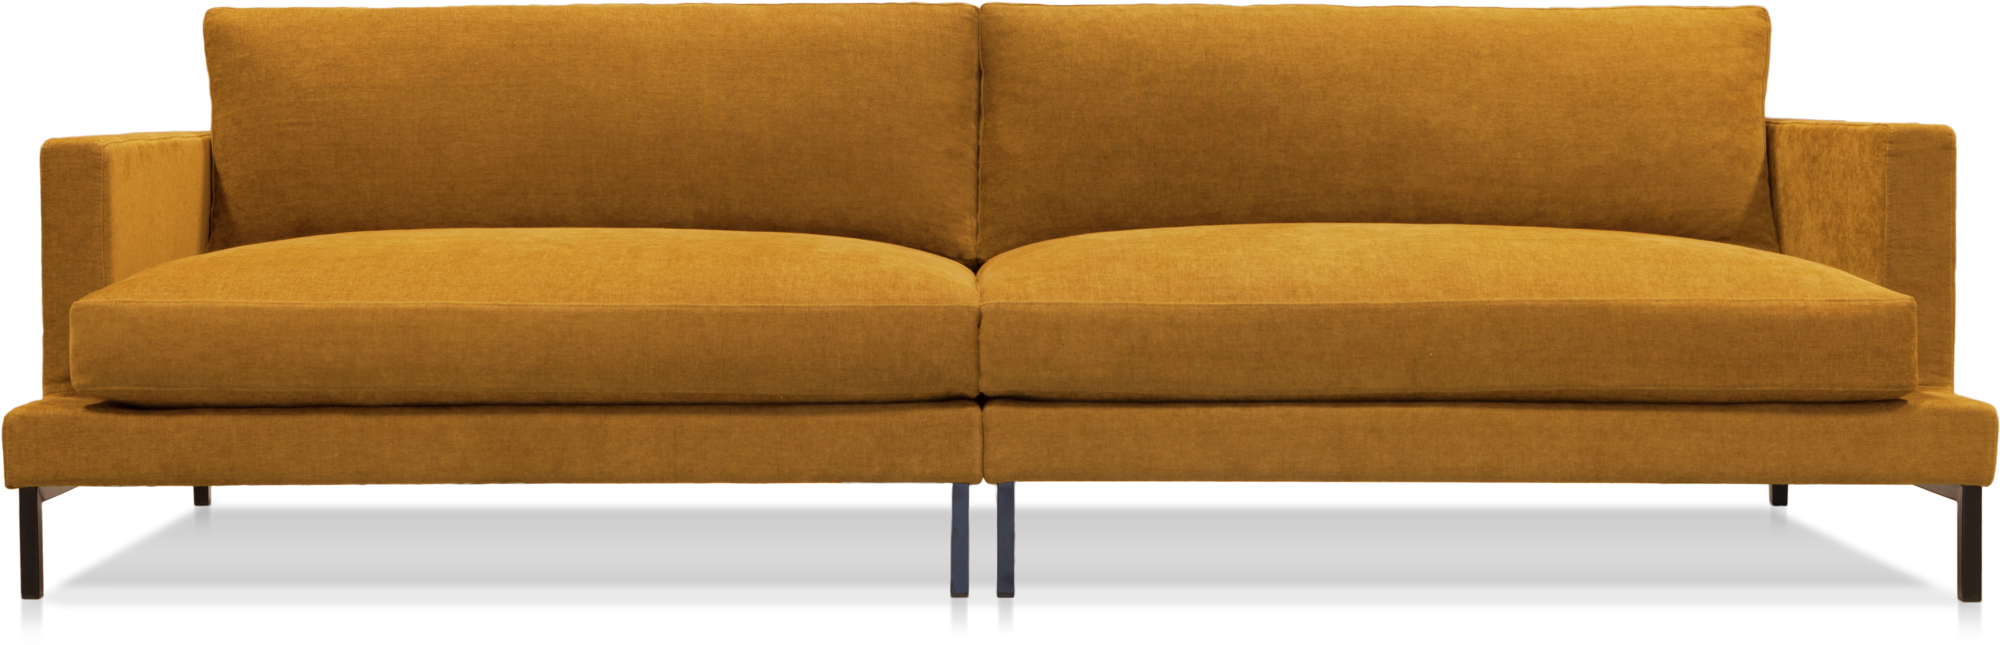 Elliot modular sofa